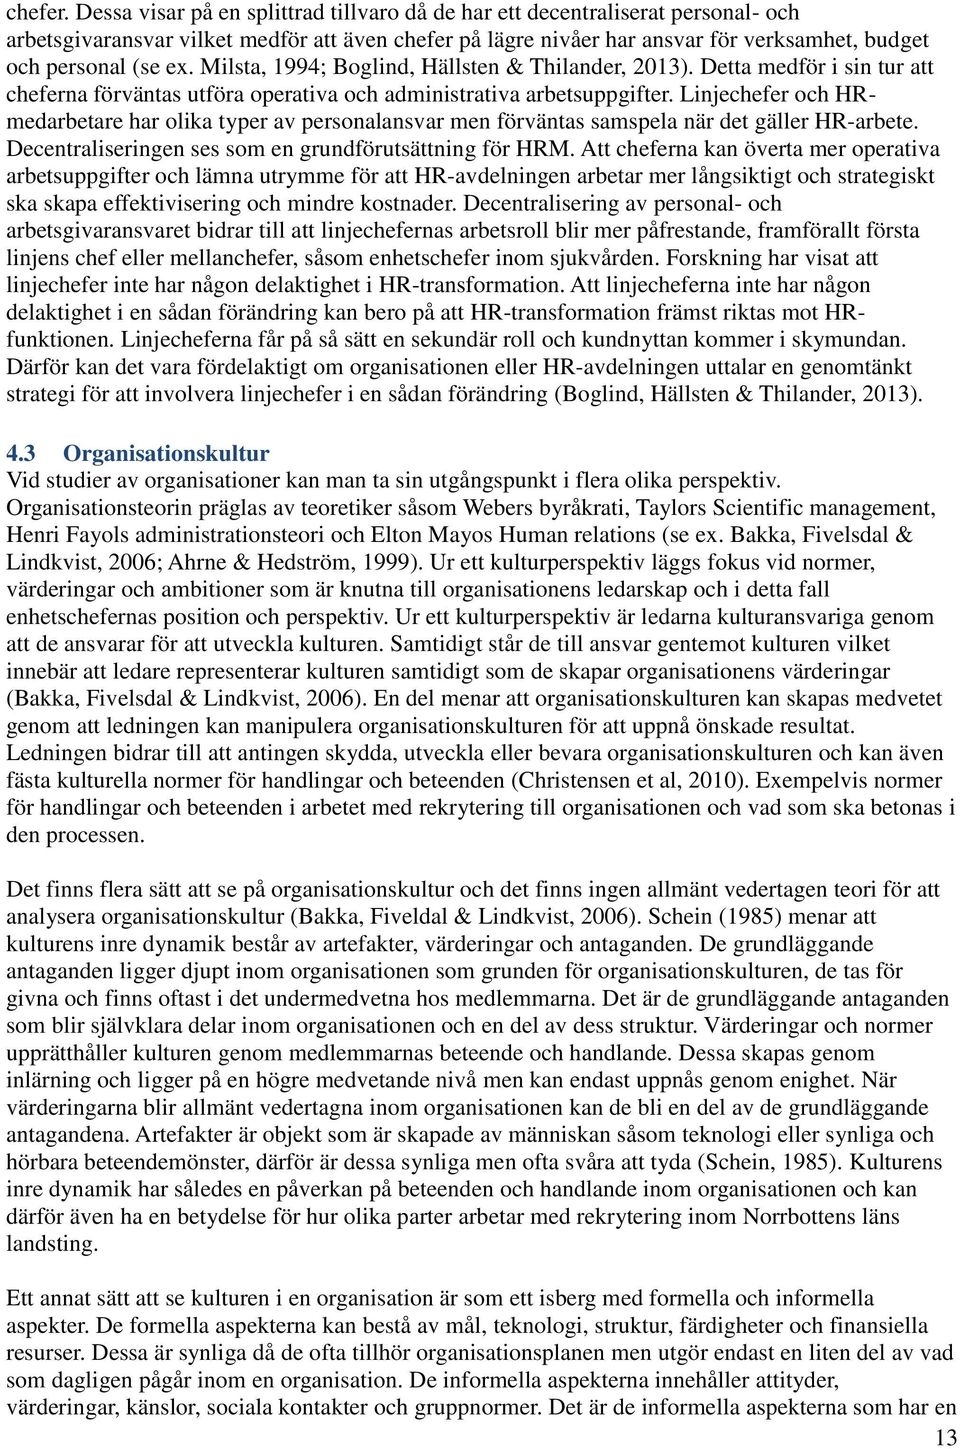 Milsta, 1994; Boglind, Hällsten & Thilander, 2013). Detta medför i sin tur att cheferna förväntas utföra operativa och administrativa arbetsuppgifter.